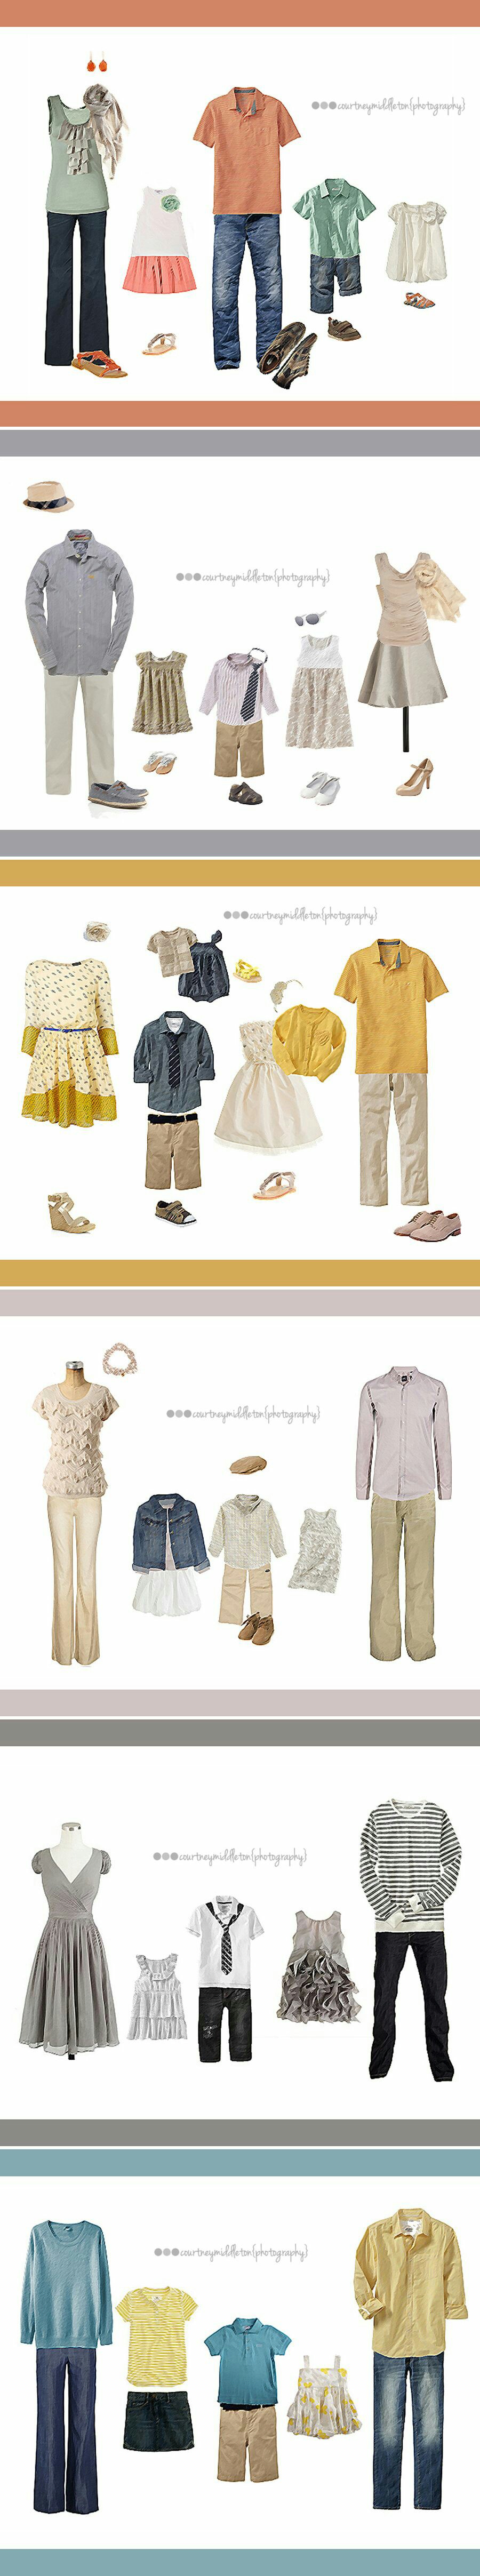 Tipy na kombinace oblečení a barev: media/jak_se_sladit/007-18.jpg